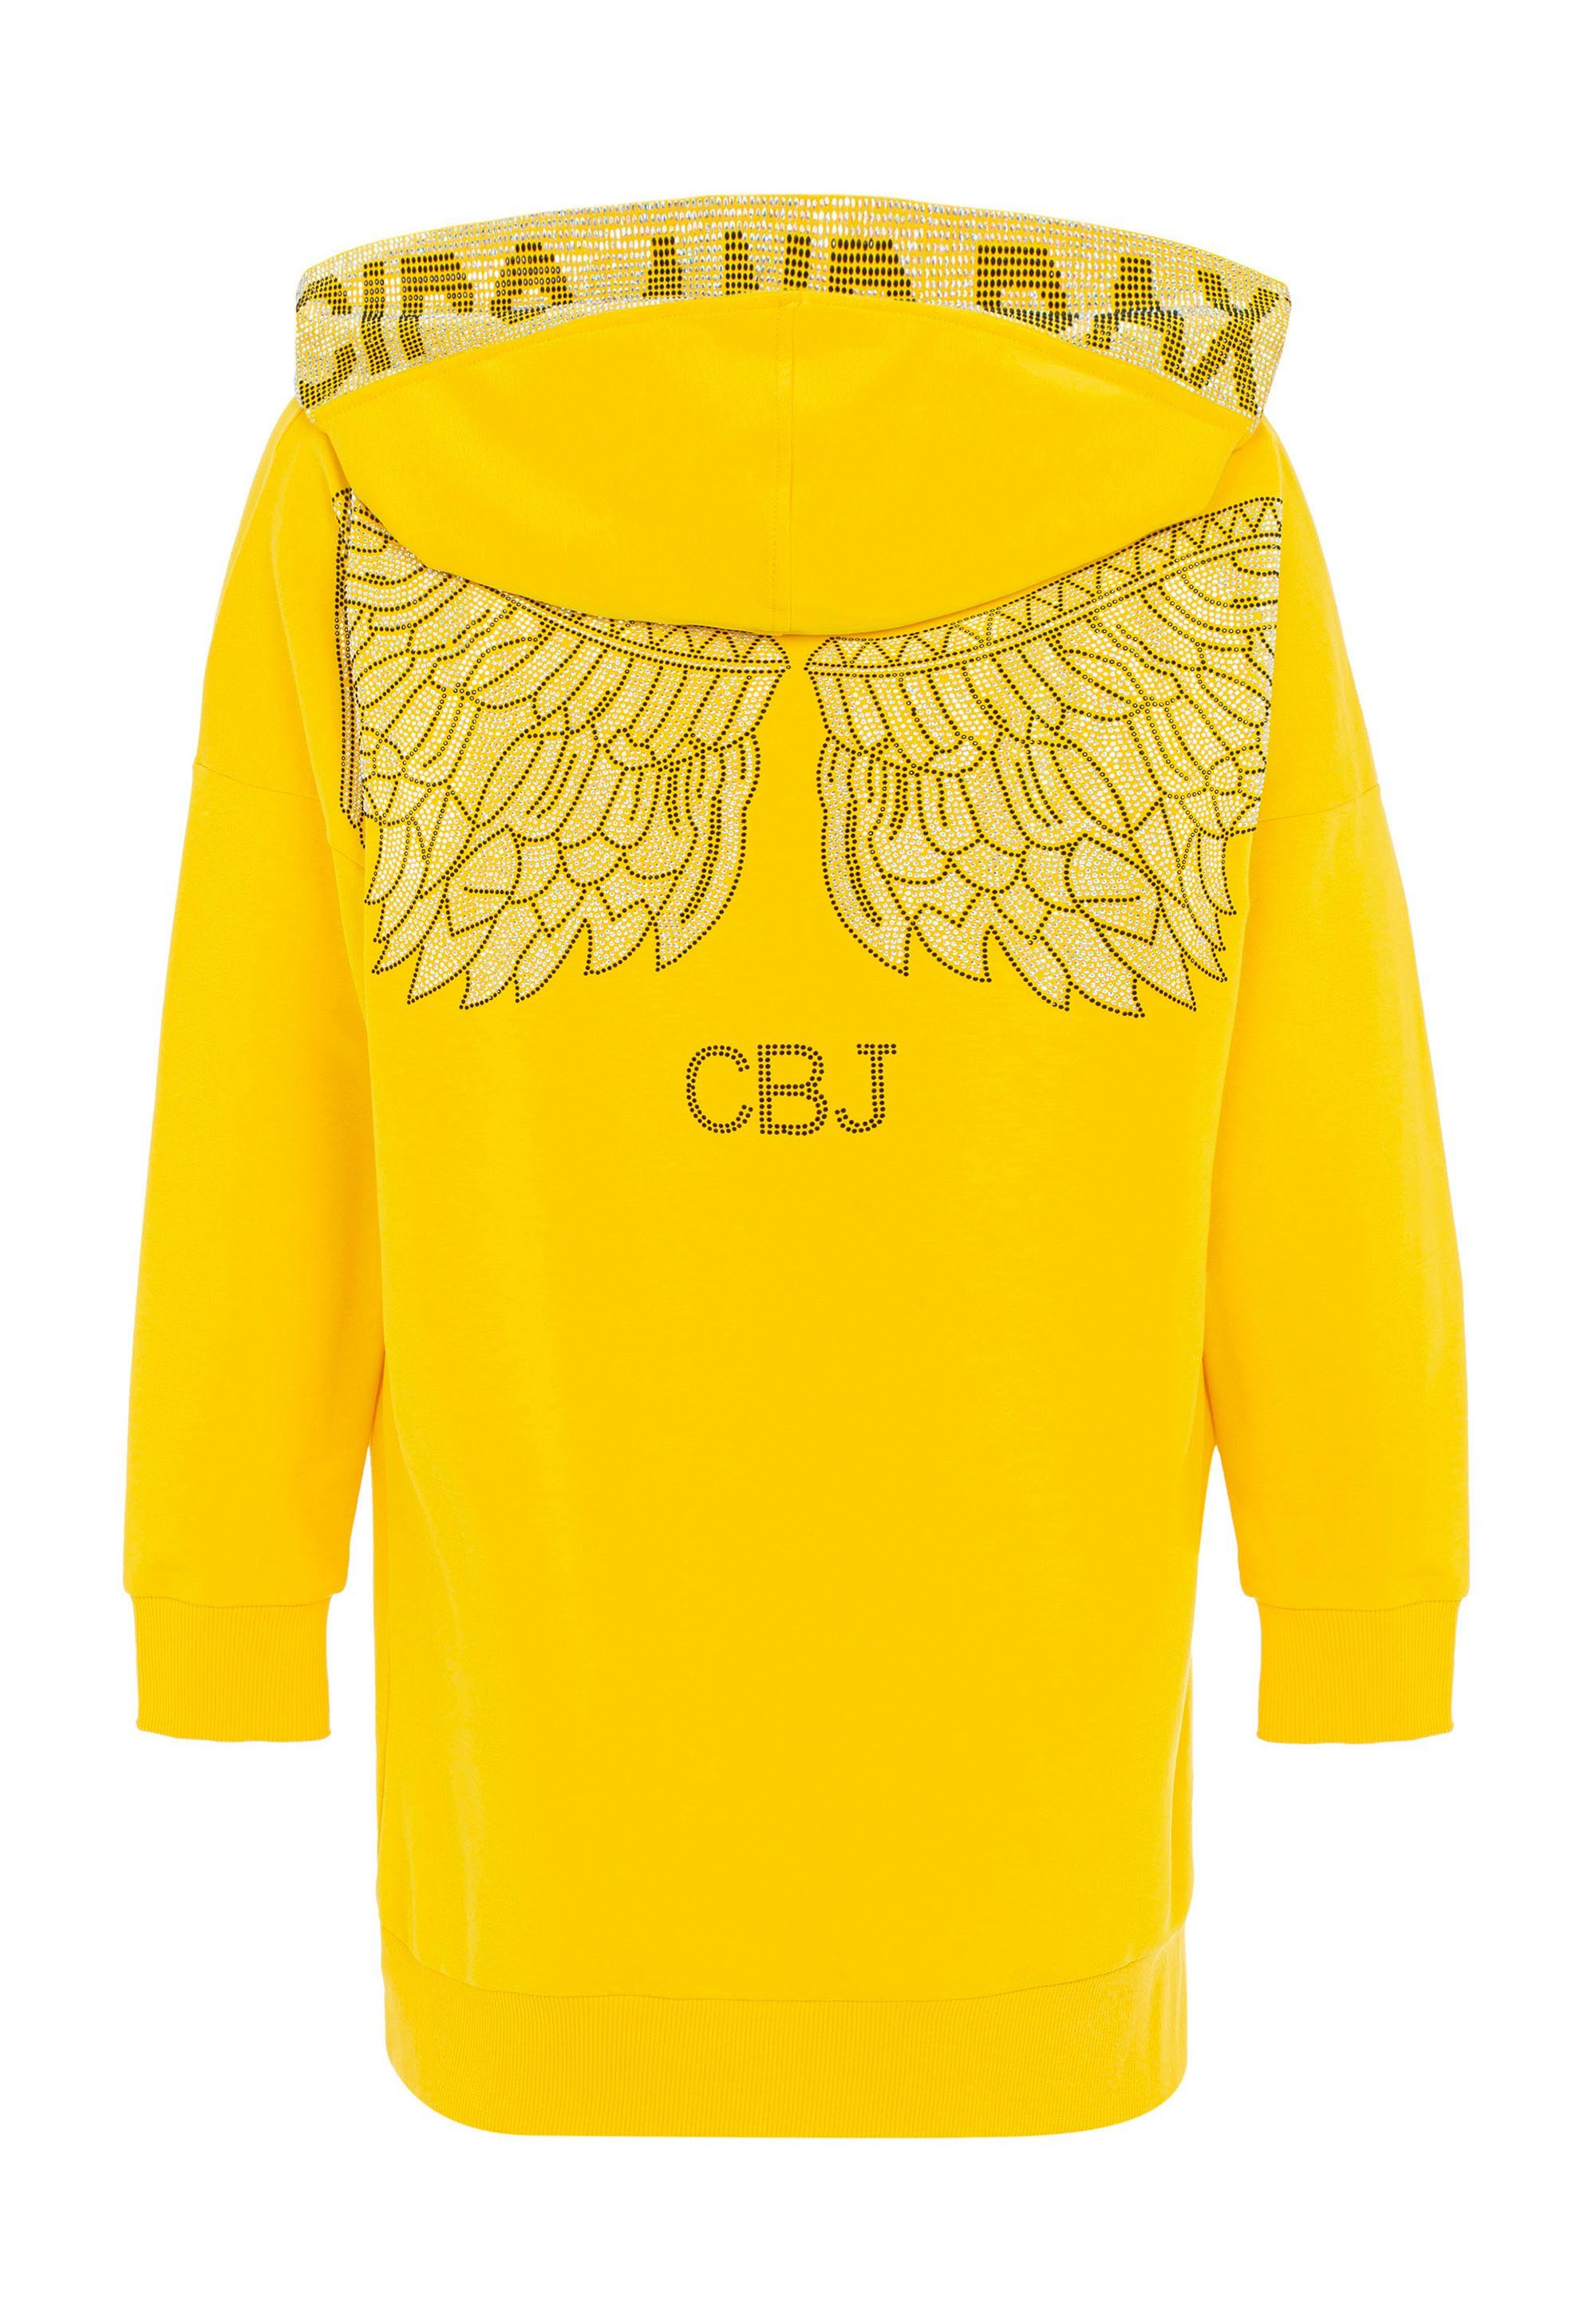 Cipo & Strass-Design Jerseykleid mit Baxx gelb aufwendigem